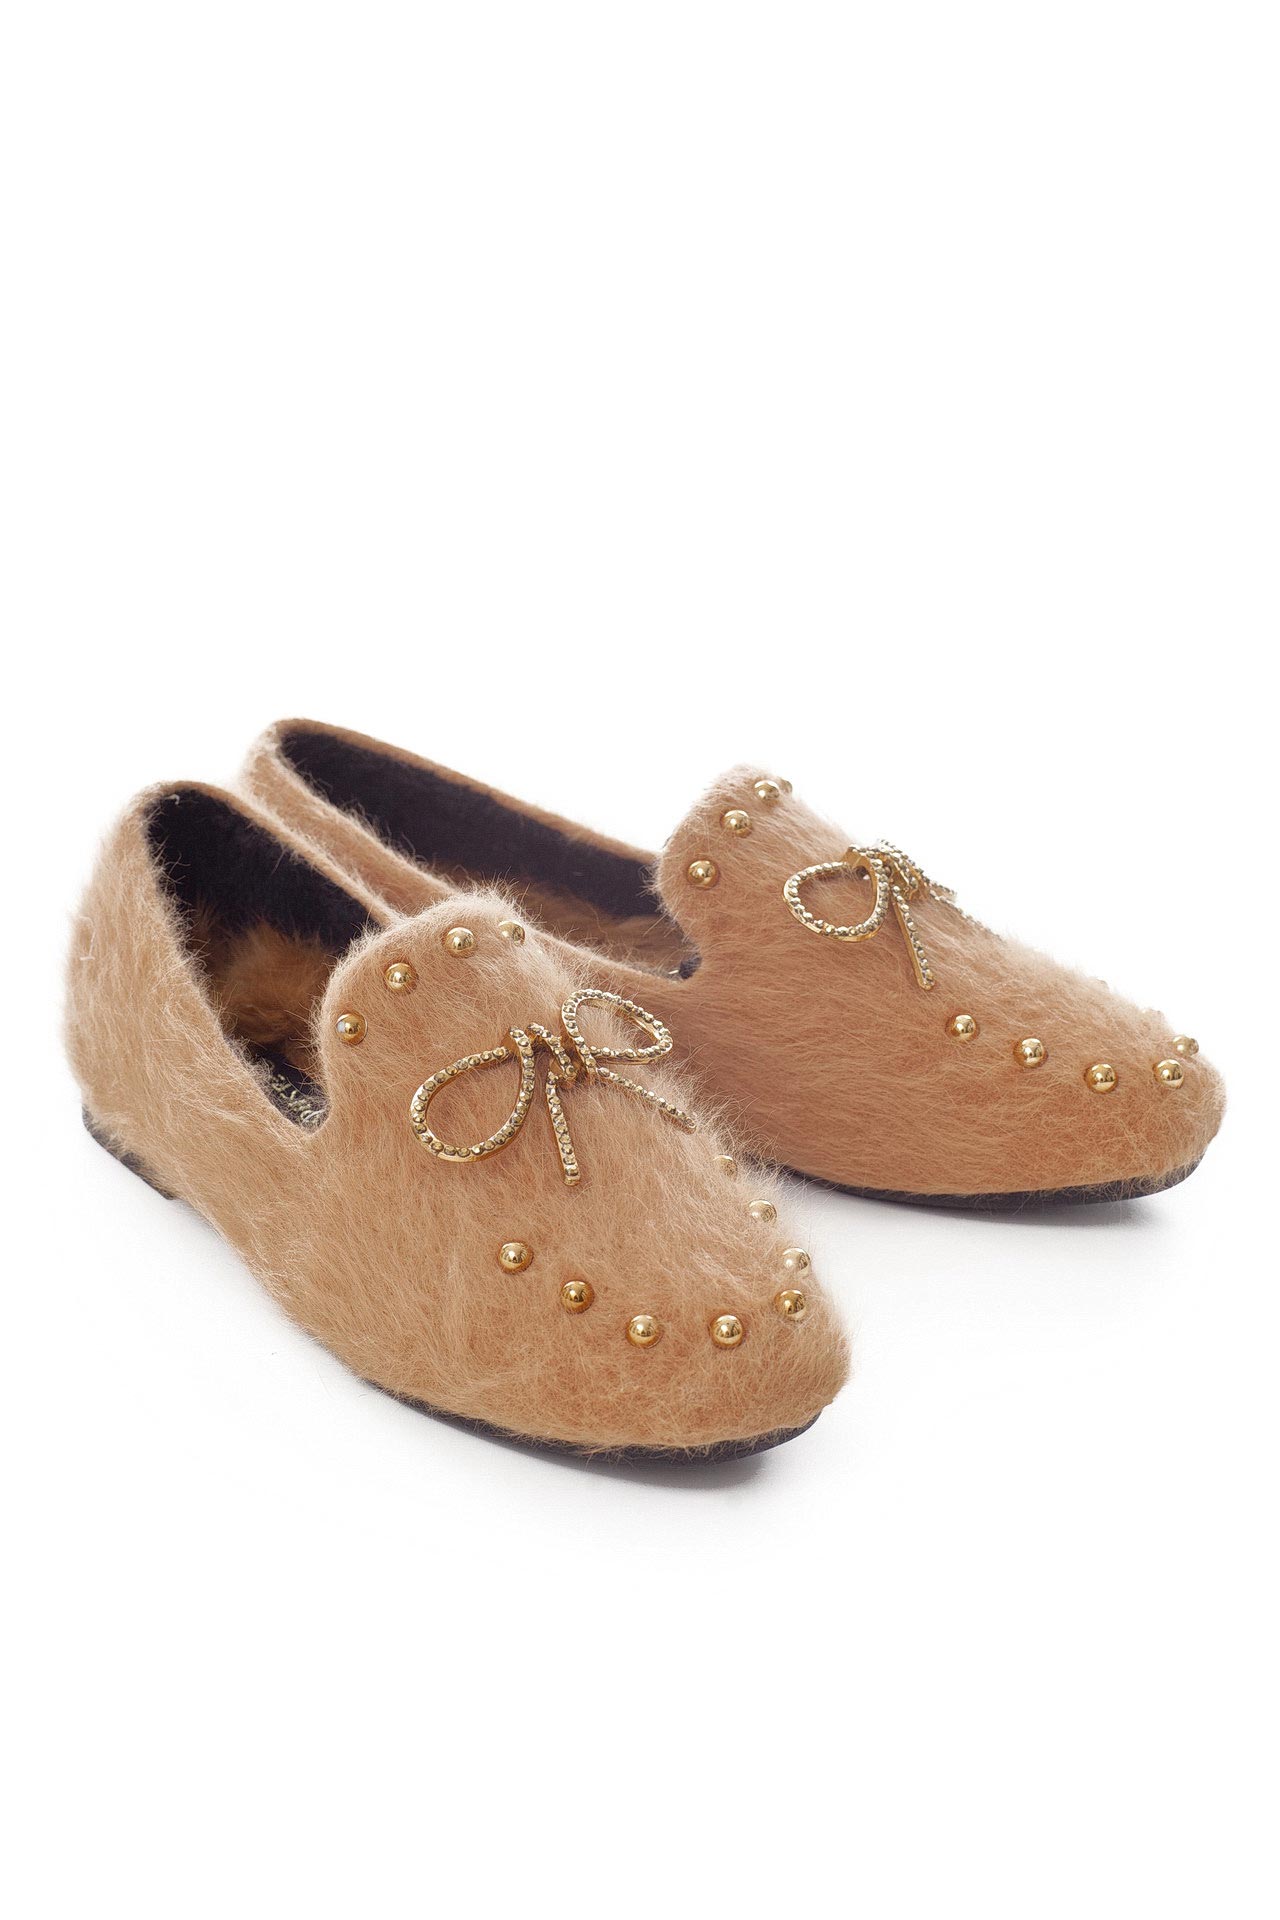 Обувь женская Туфли FASHION (885T15/18.1). Купить за 4550 руб.